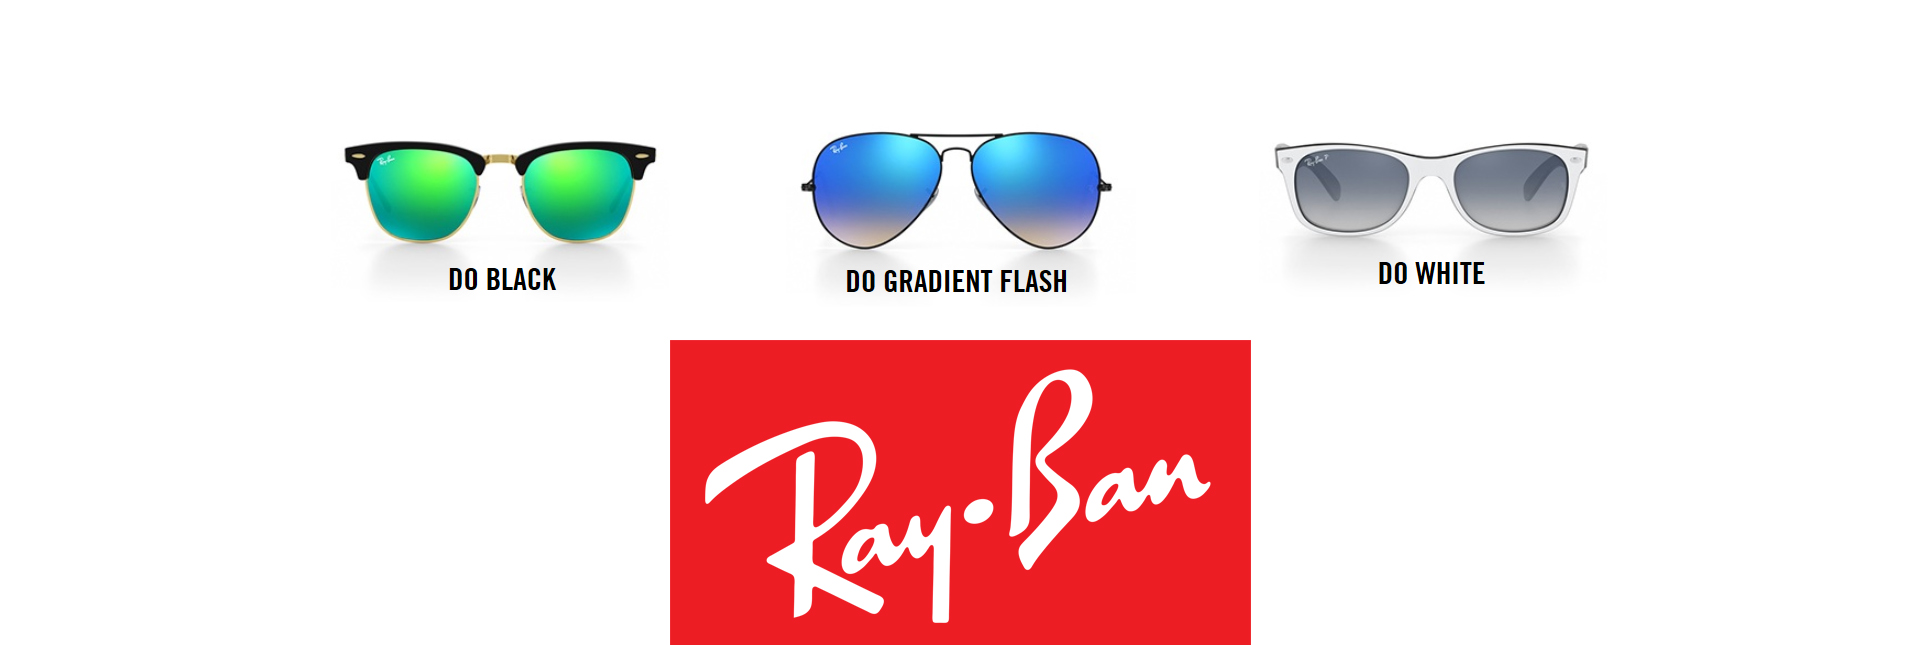 ray-ban frames